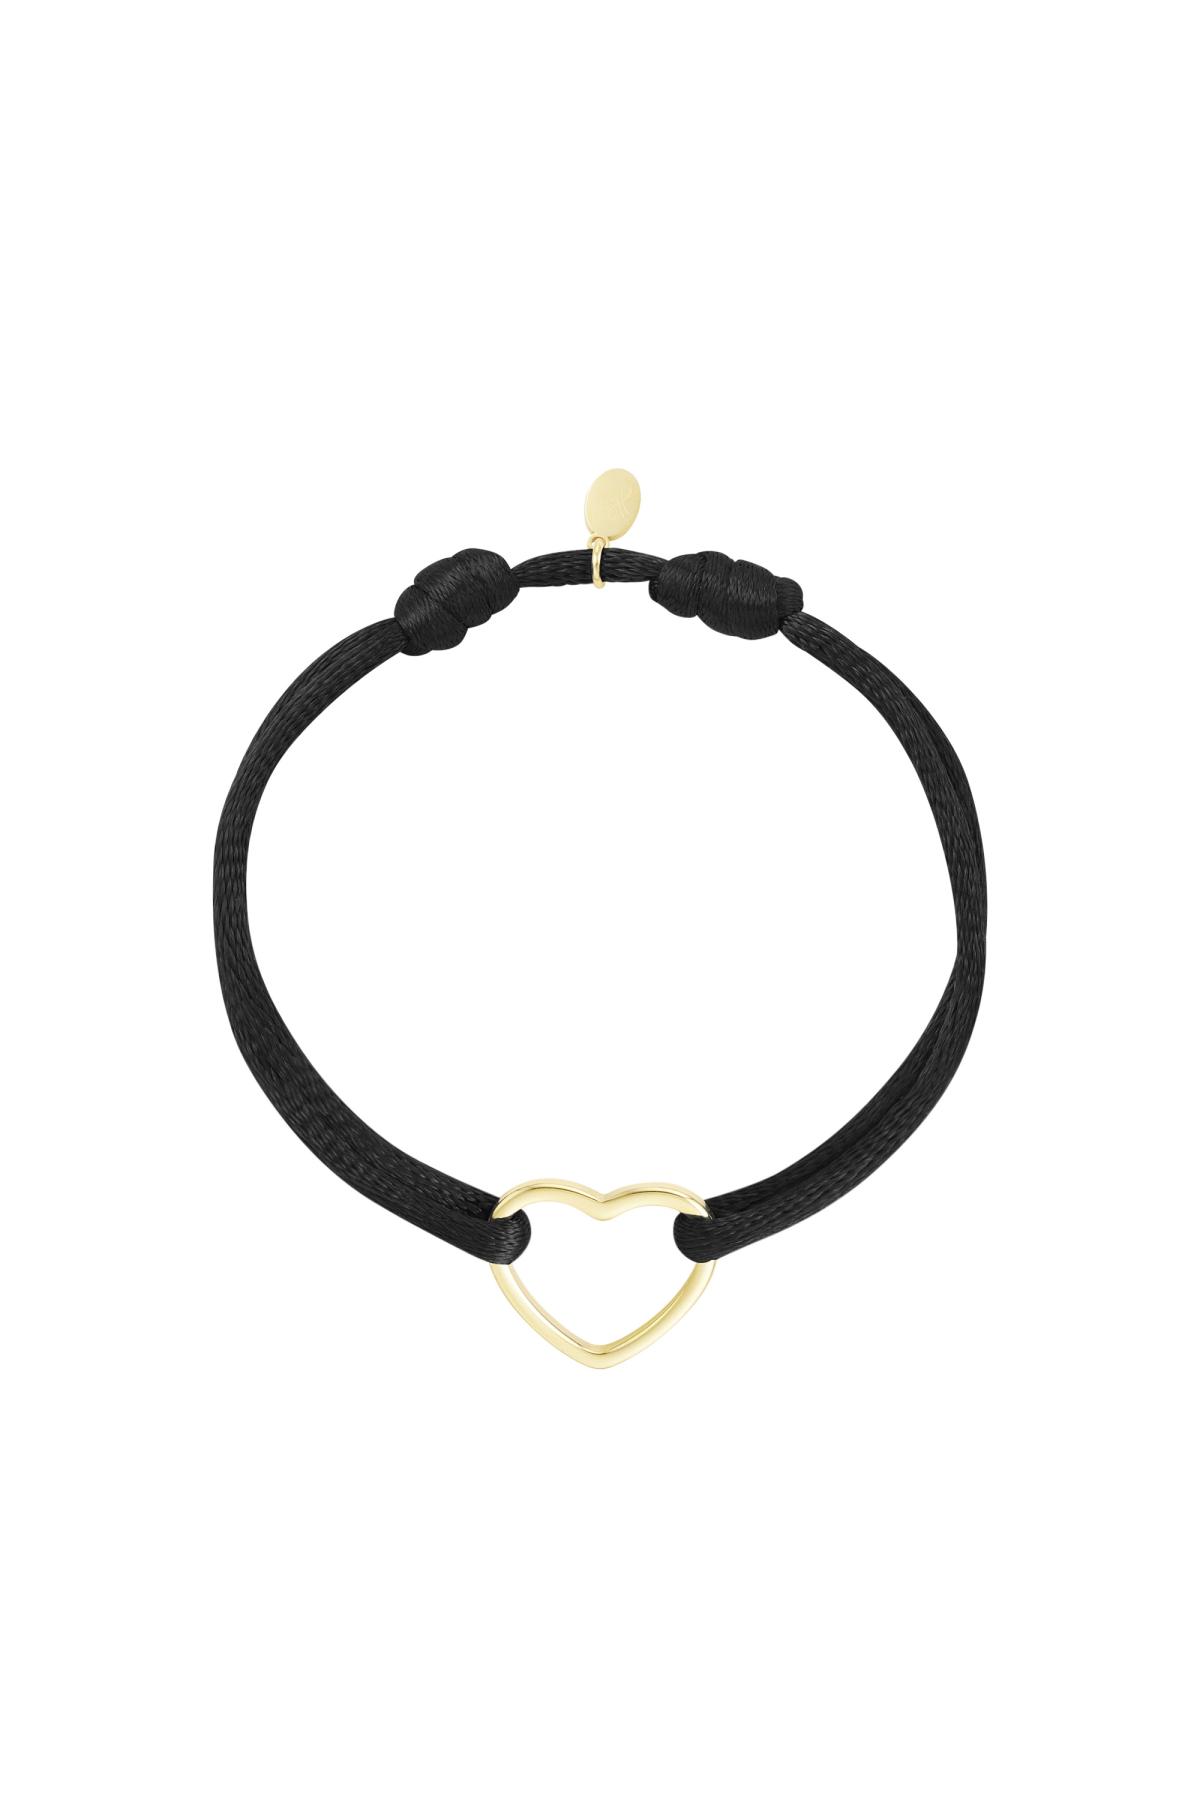 Fabric bracelet heart Black & Gold Stainless Steel h5 